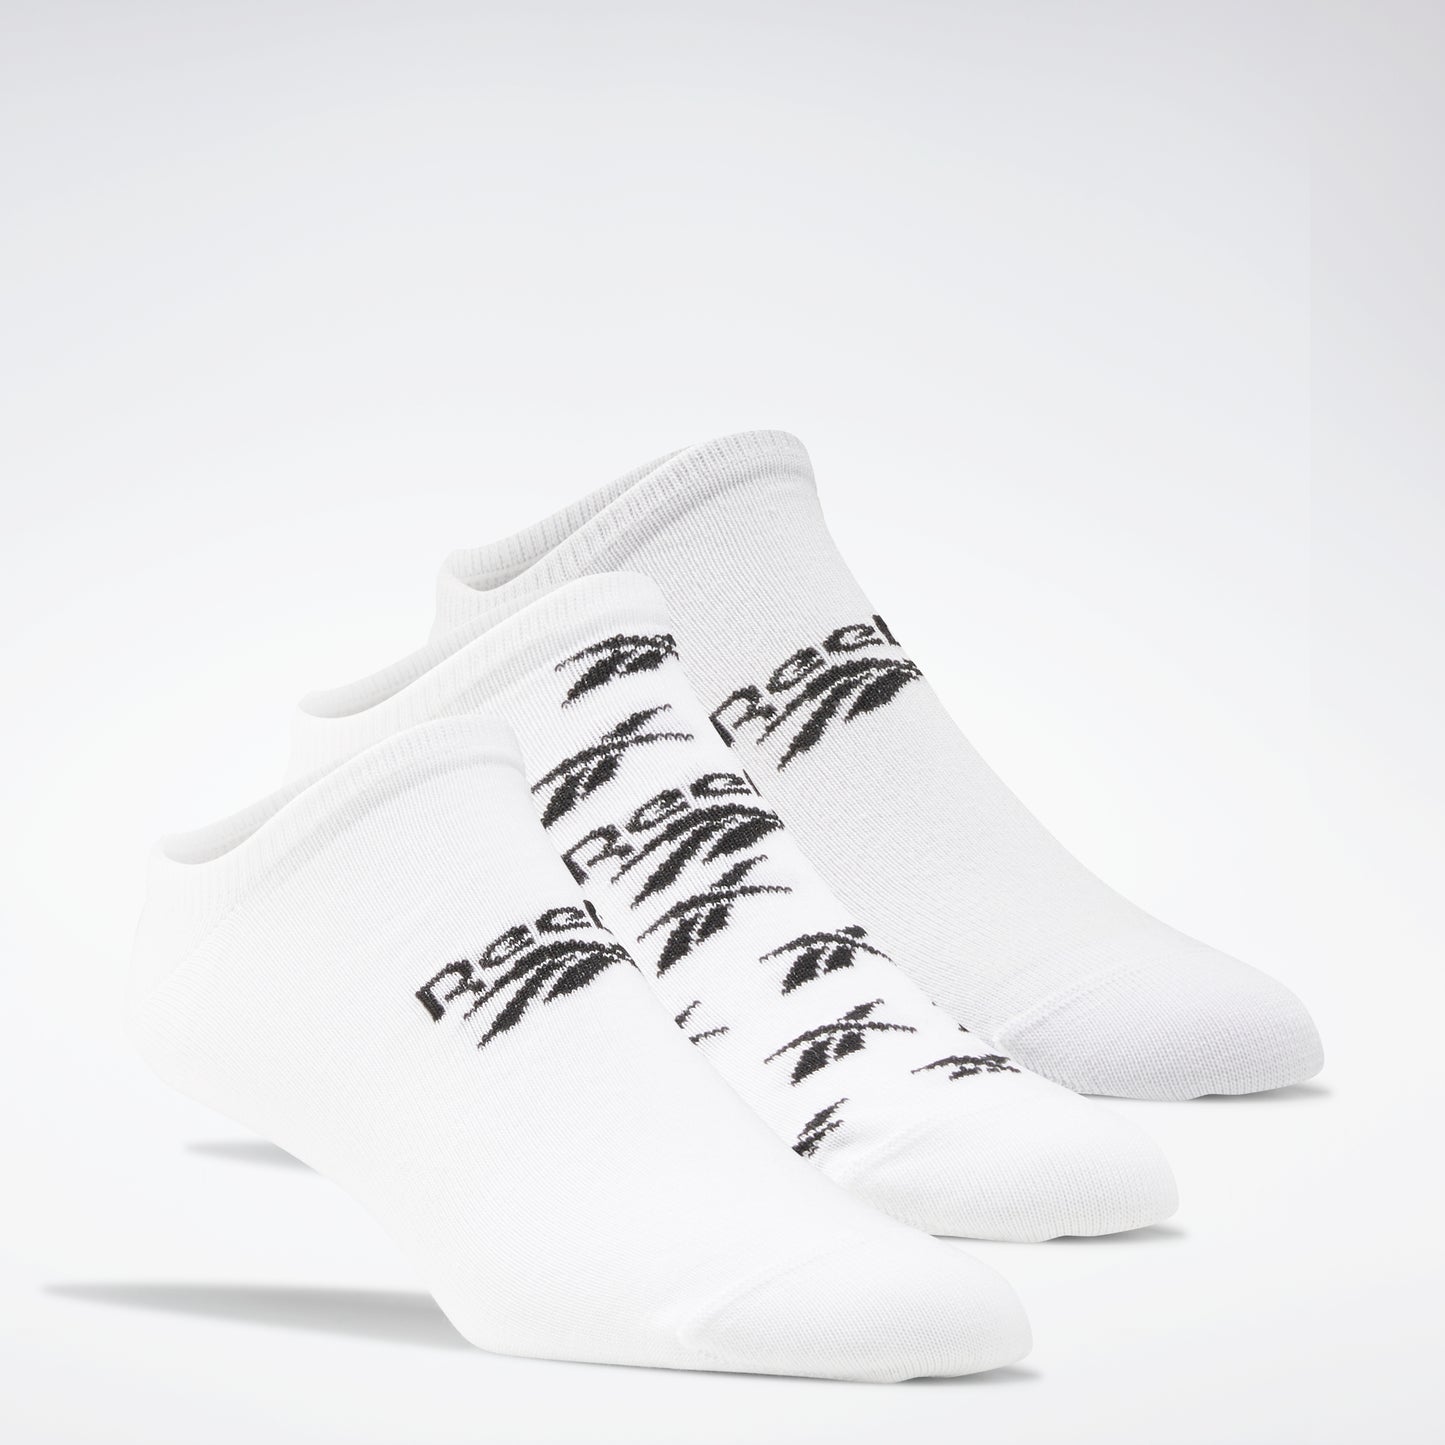 Reebok Apparel Men Classics Invisible Socks 3 Pairs White/Lgsogr/White